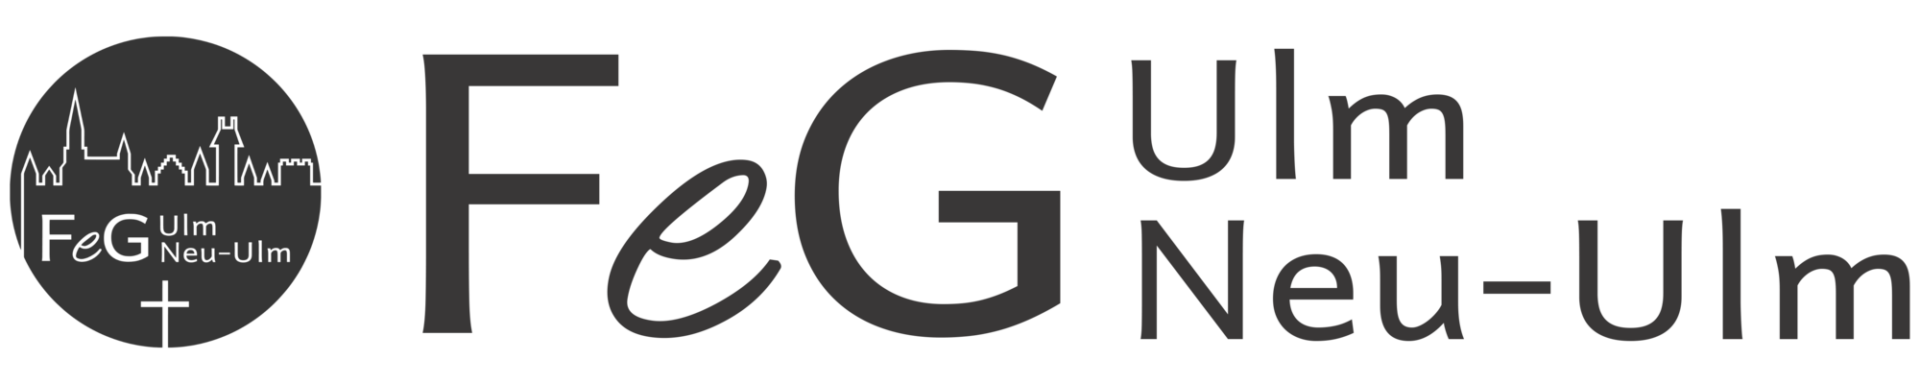 csm FeG Logo und Schriftzug Dunkelgrau f2cfc6d1ba 1